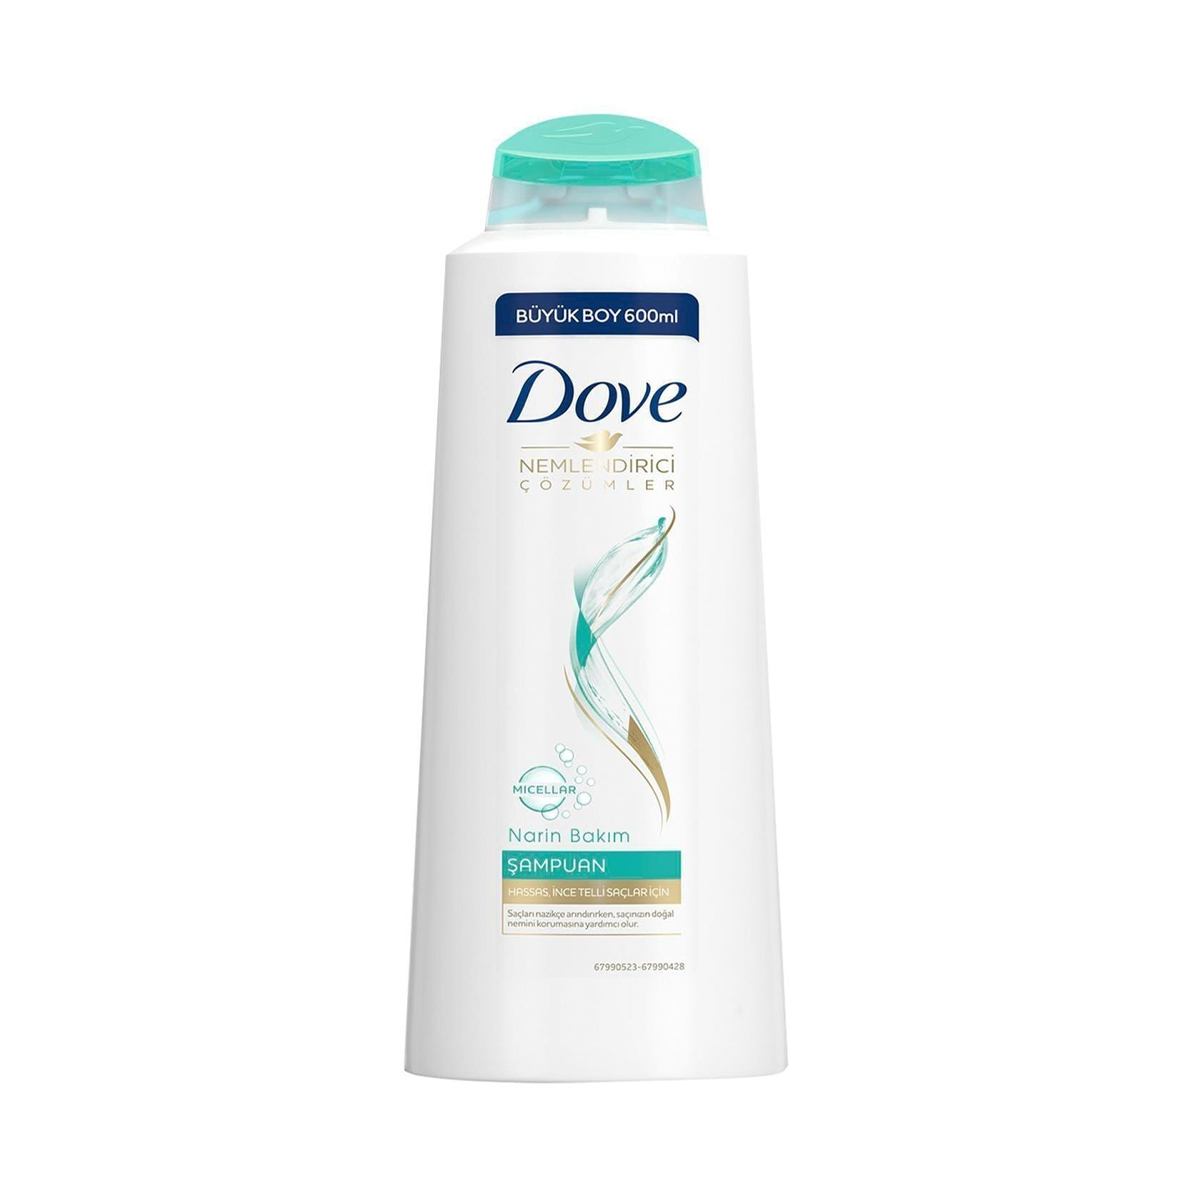 Dove Micellar Narin Bakım Hassas İnce Telli Saçlar İçin Şampuan 400 ml